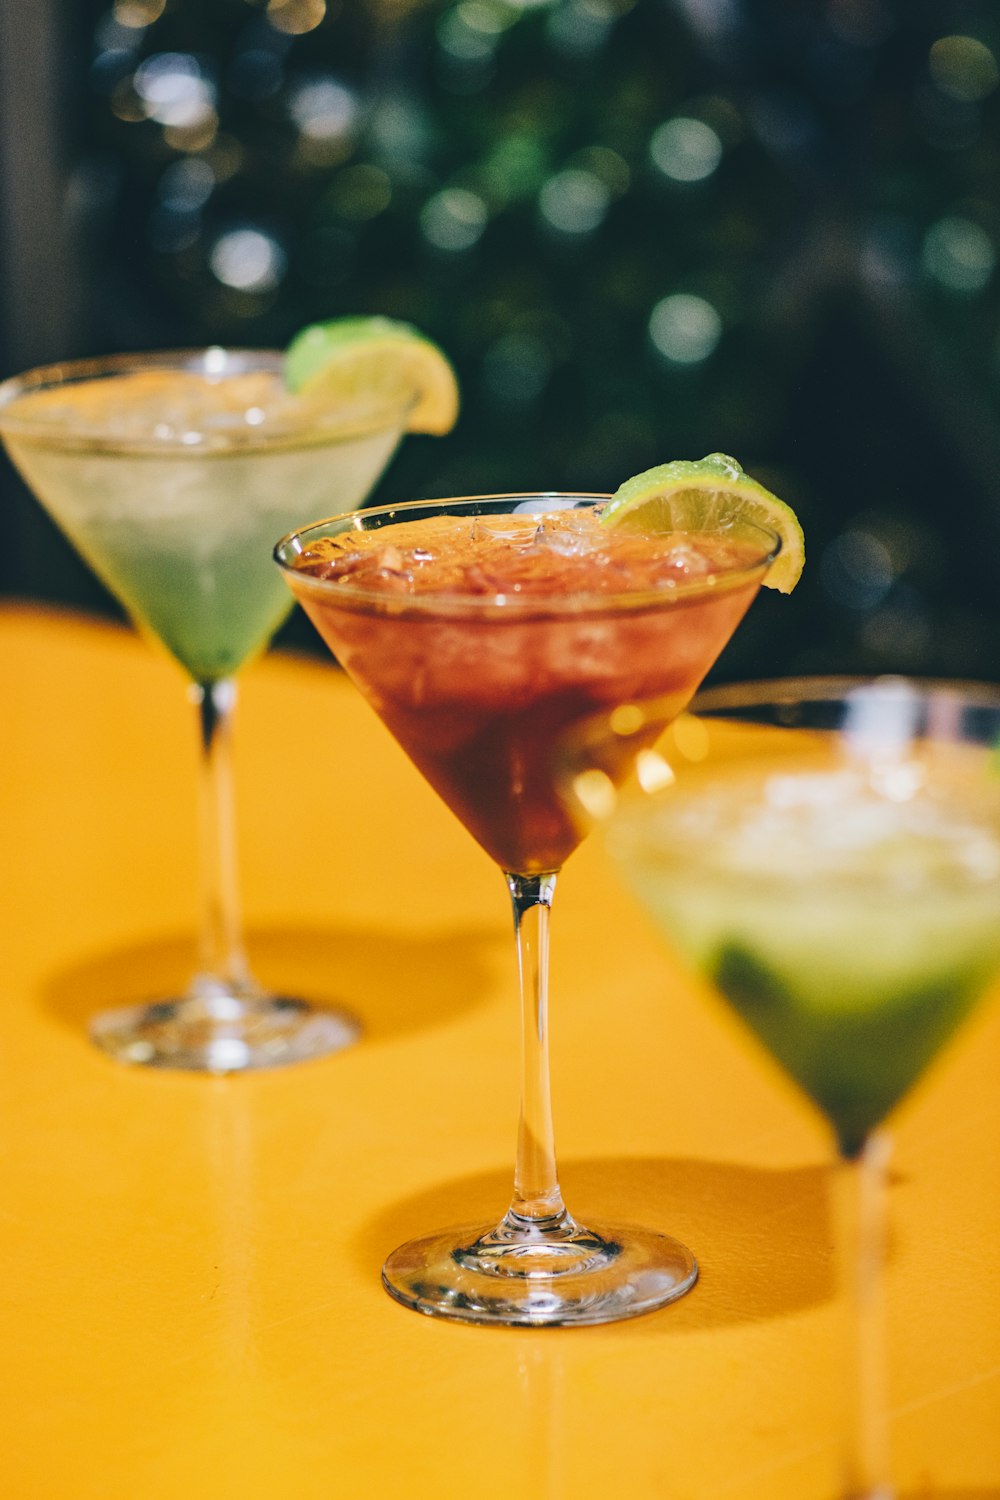 zwei Martini-Gläser mit grüner und roter Flüssigkeit